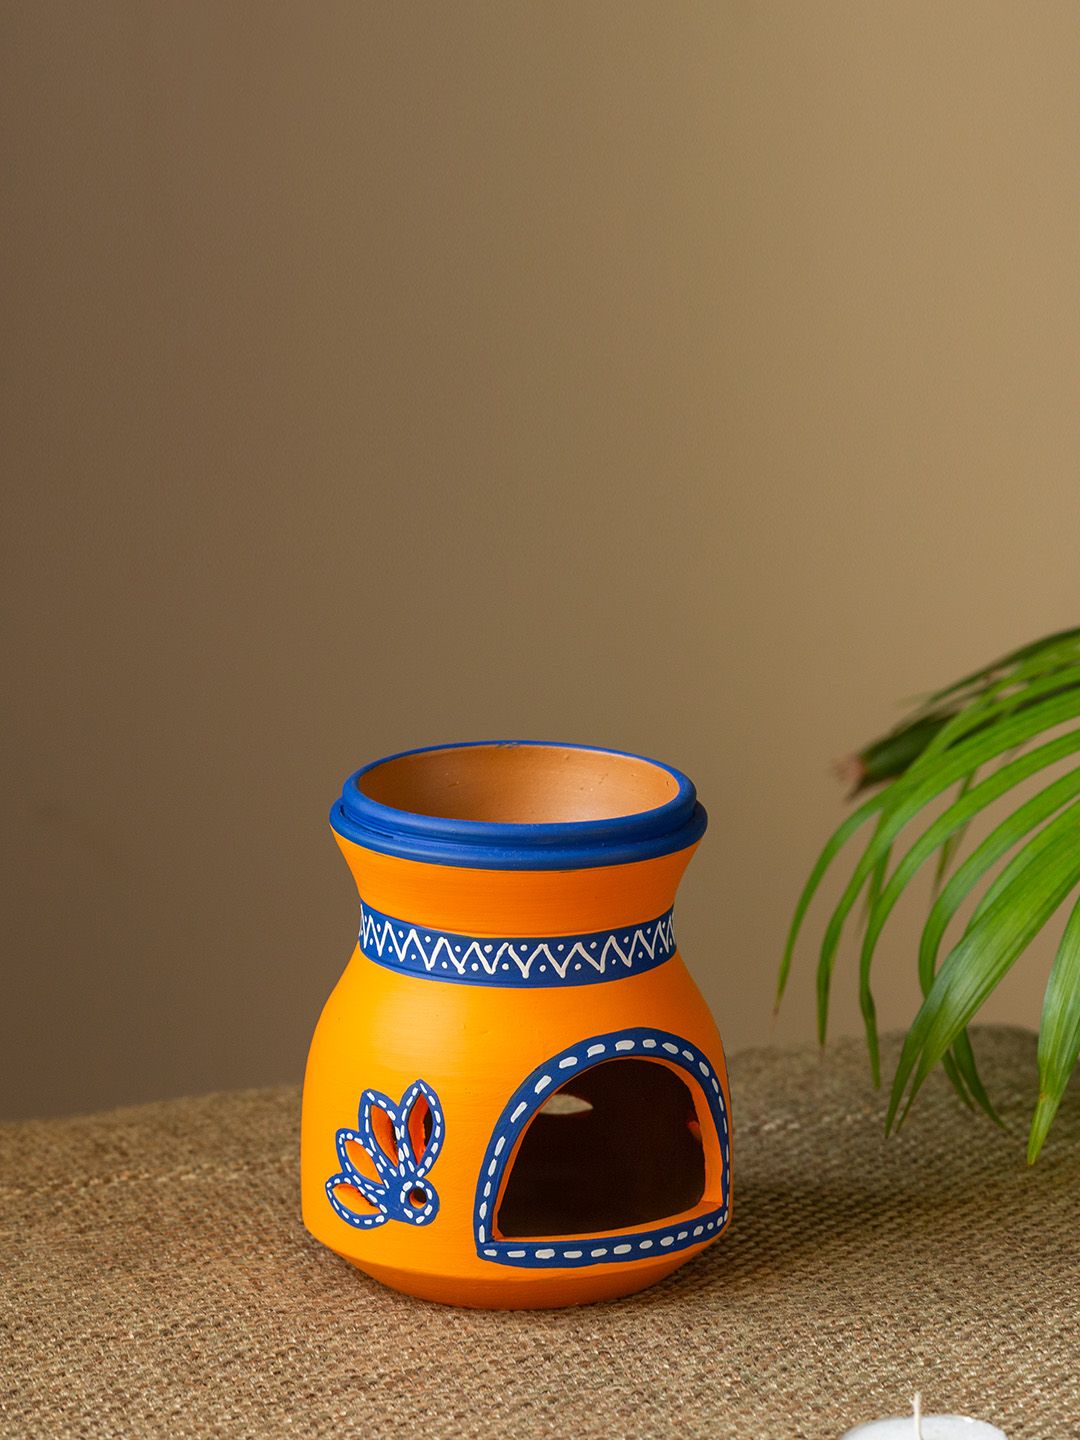 ExclusiveLane Orange & Blue Handpainted Aroma Oil Diffuser Price in India